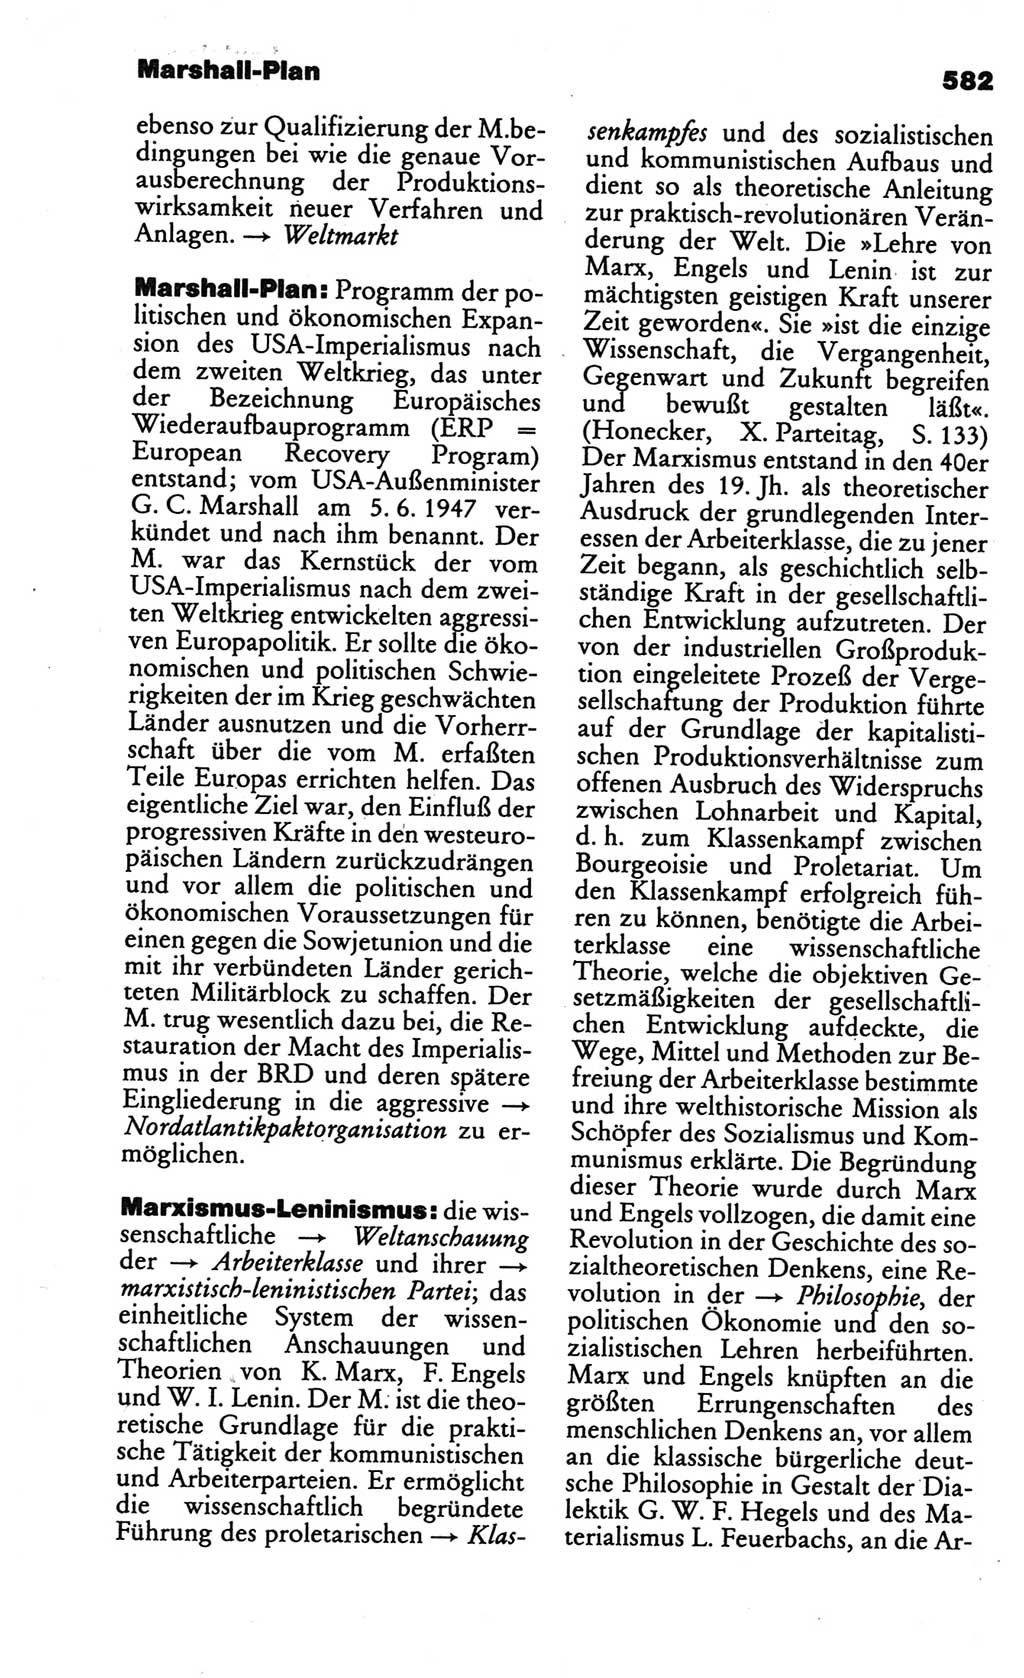 Kleines politisches Wörterbuch [Deutsche Demokratische Republik (DDR)] 1986, Seite 582 (Kl. pol. Wb. DDR 1986, S. 582)